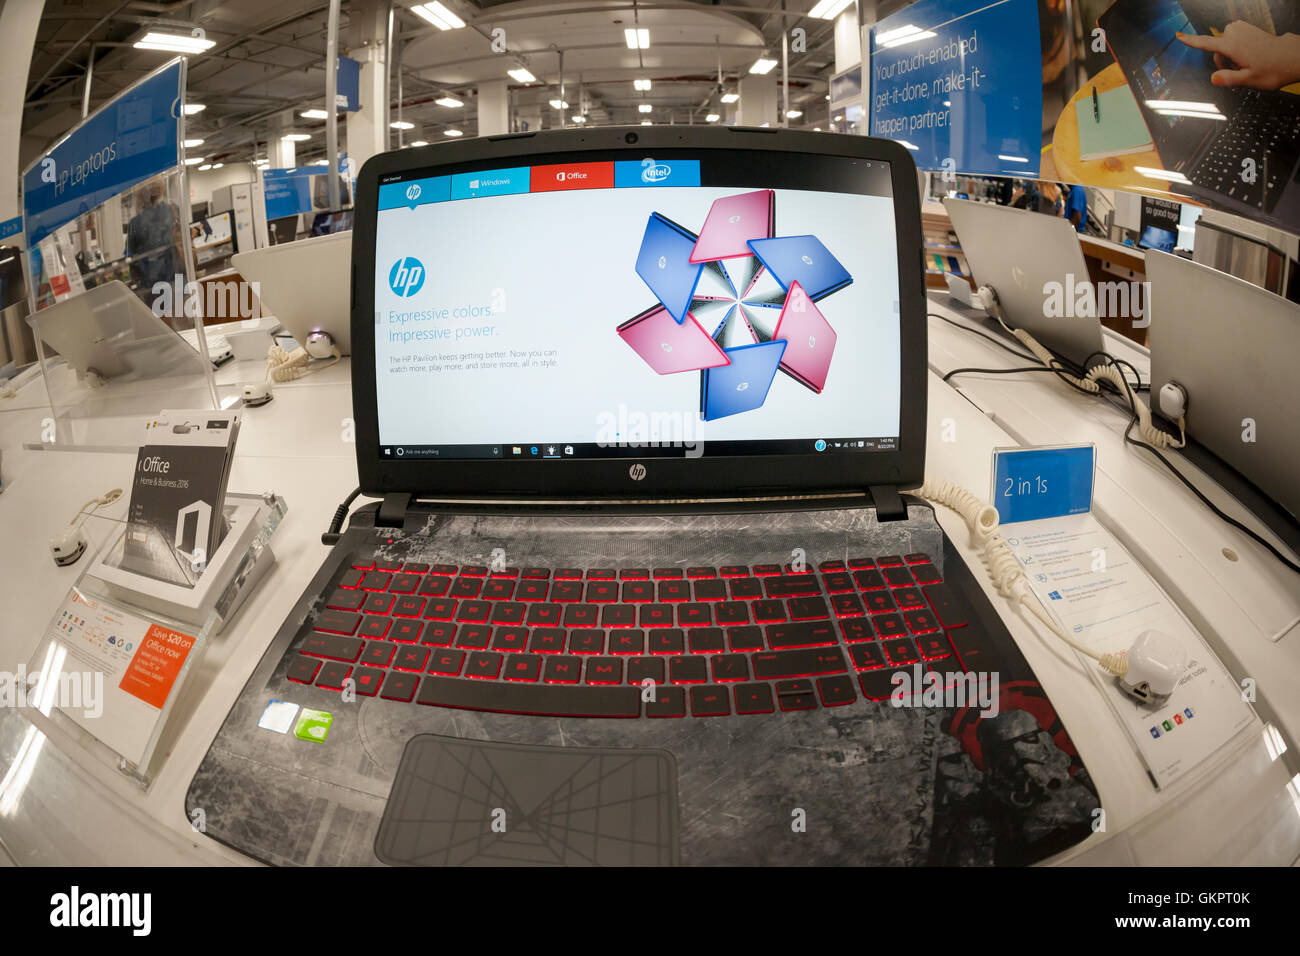 Les ordinateurs portables de la marque HP dans un magasin Best Buy à New  York Lundi, 22 août 2016. HP, le deuxième plus grand fabricant d'ordinateurs  personnels, doit publier le troisième trimestre